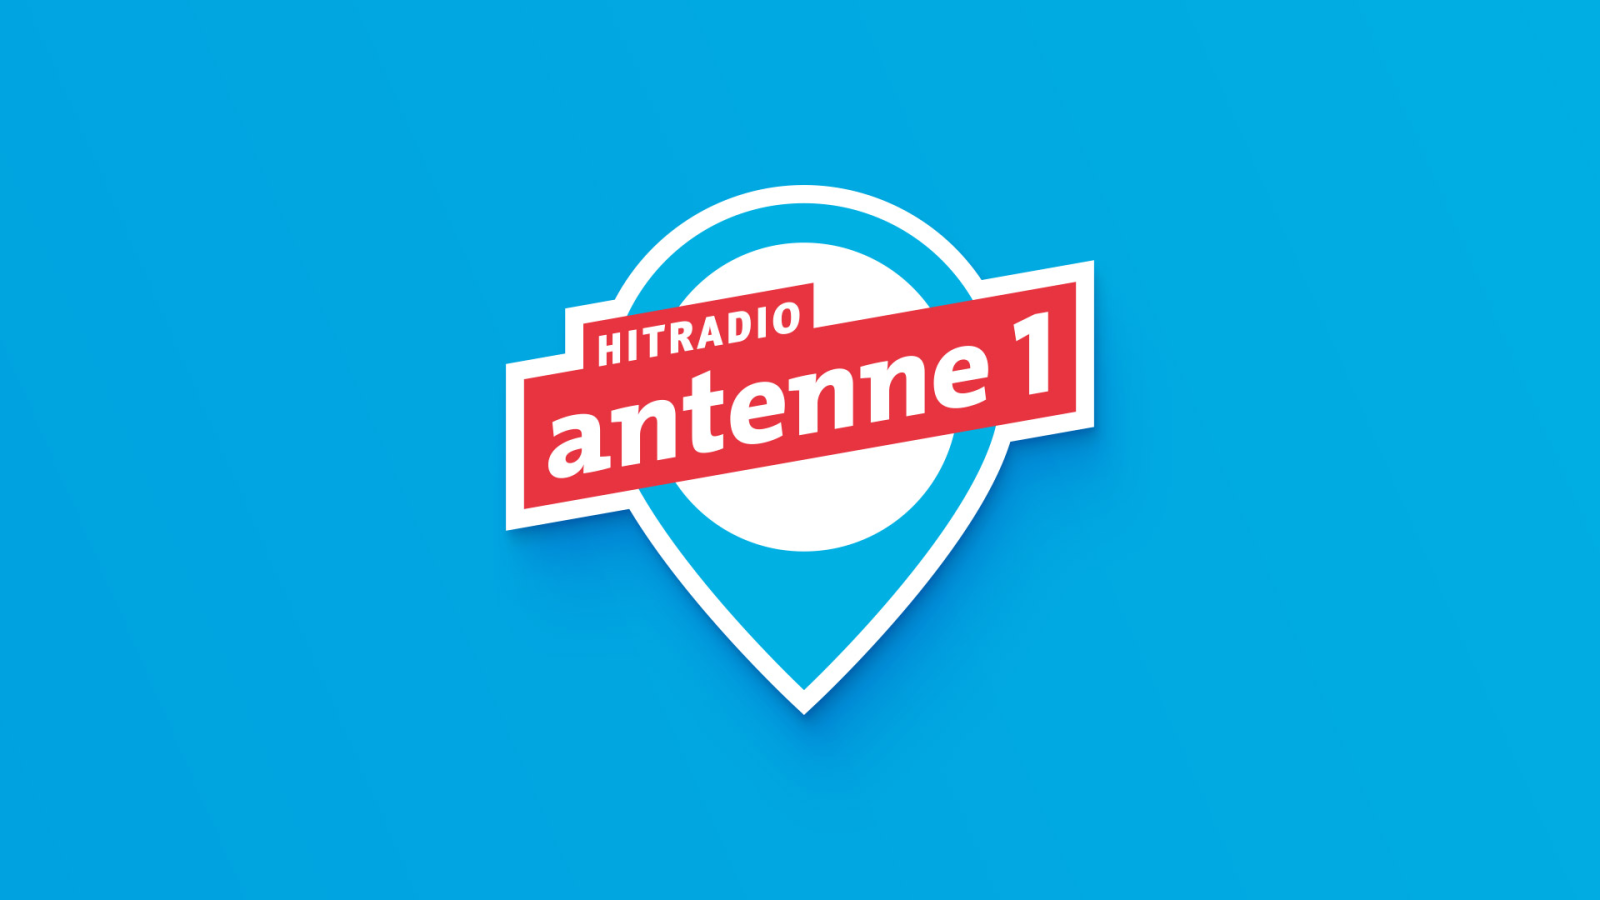 (c) Antenne1.de